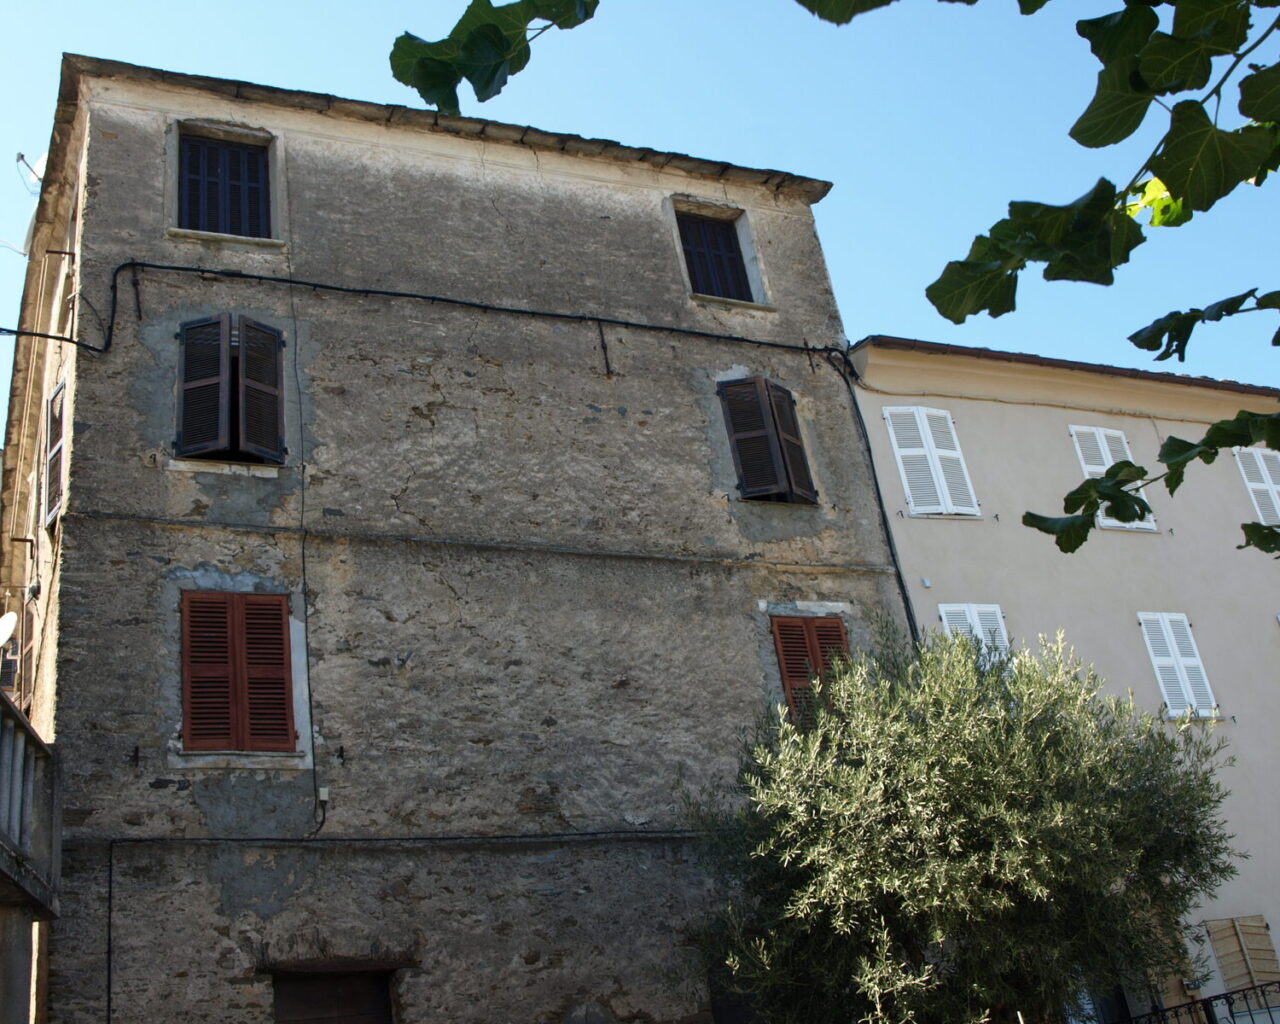 06 Le hameau de Chigliacci avec ses hautes maisons bourgeoises